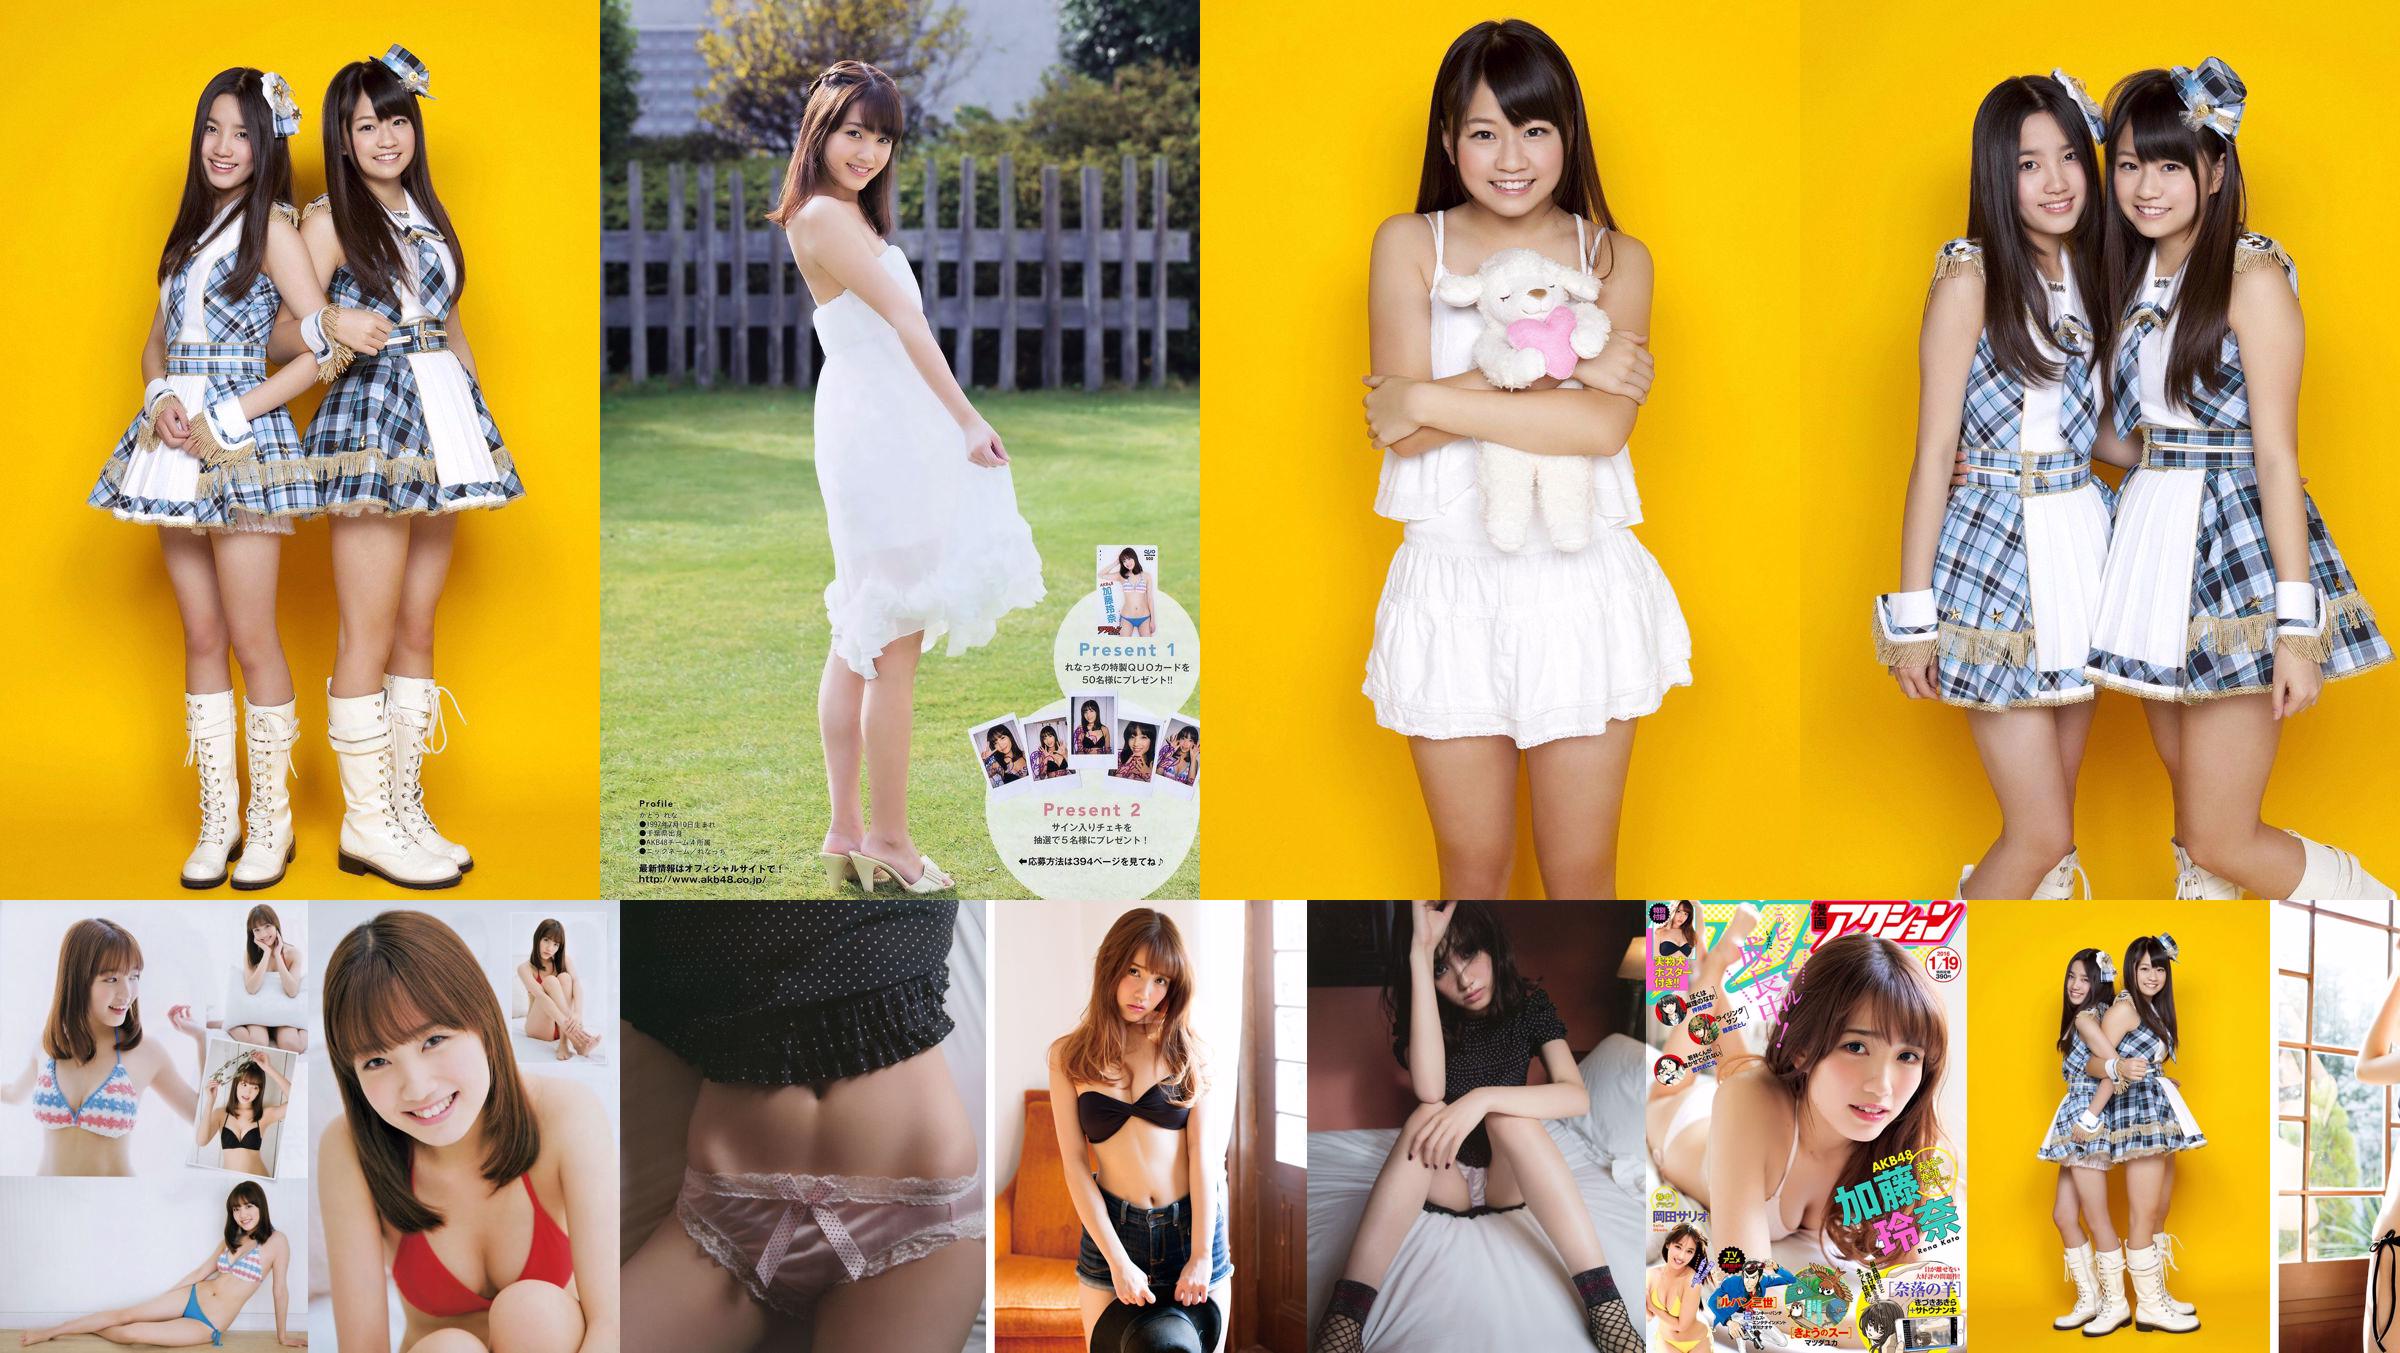 Shimada Haruka / Kato Rena "AKB48 Next Girls 1st" [YS Web] Vol.393 No.66a951 Pagina 2